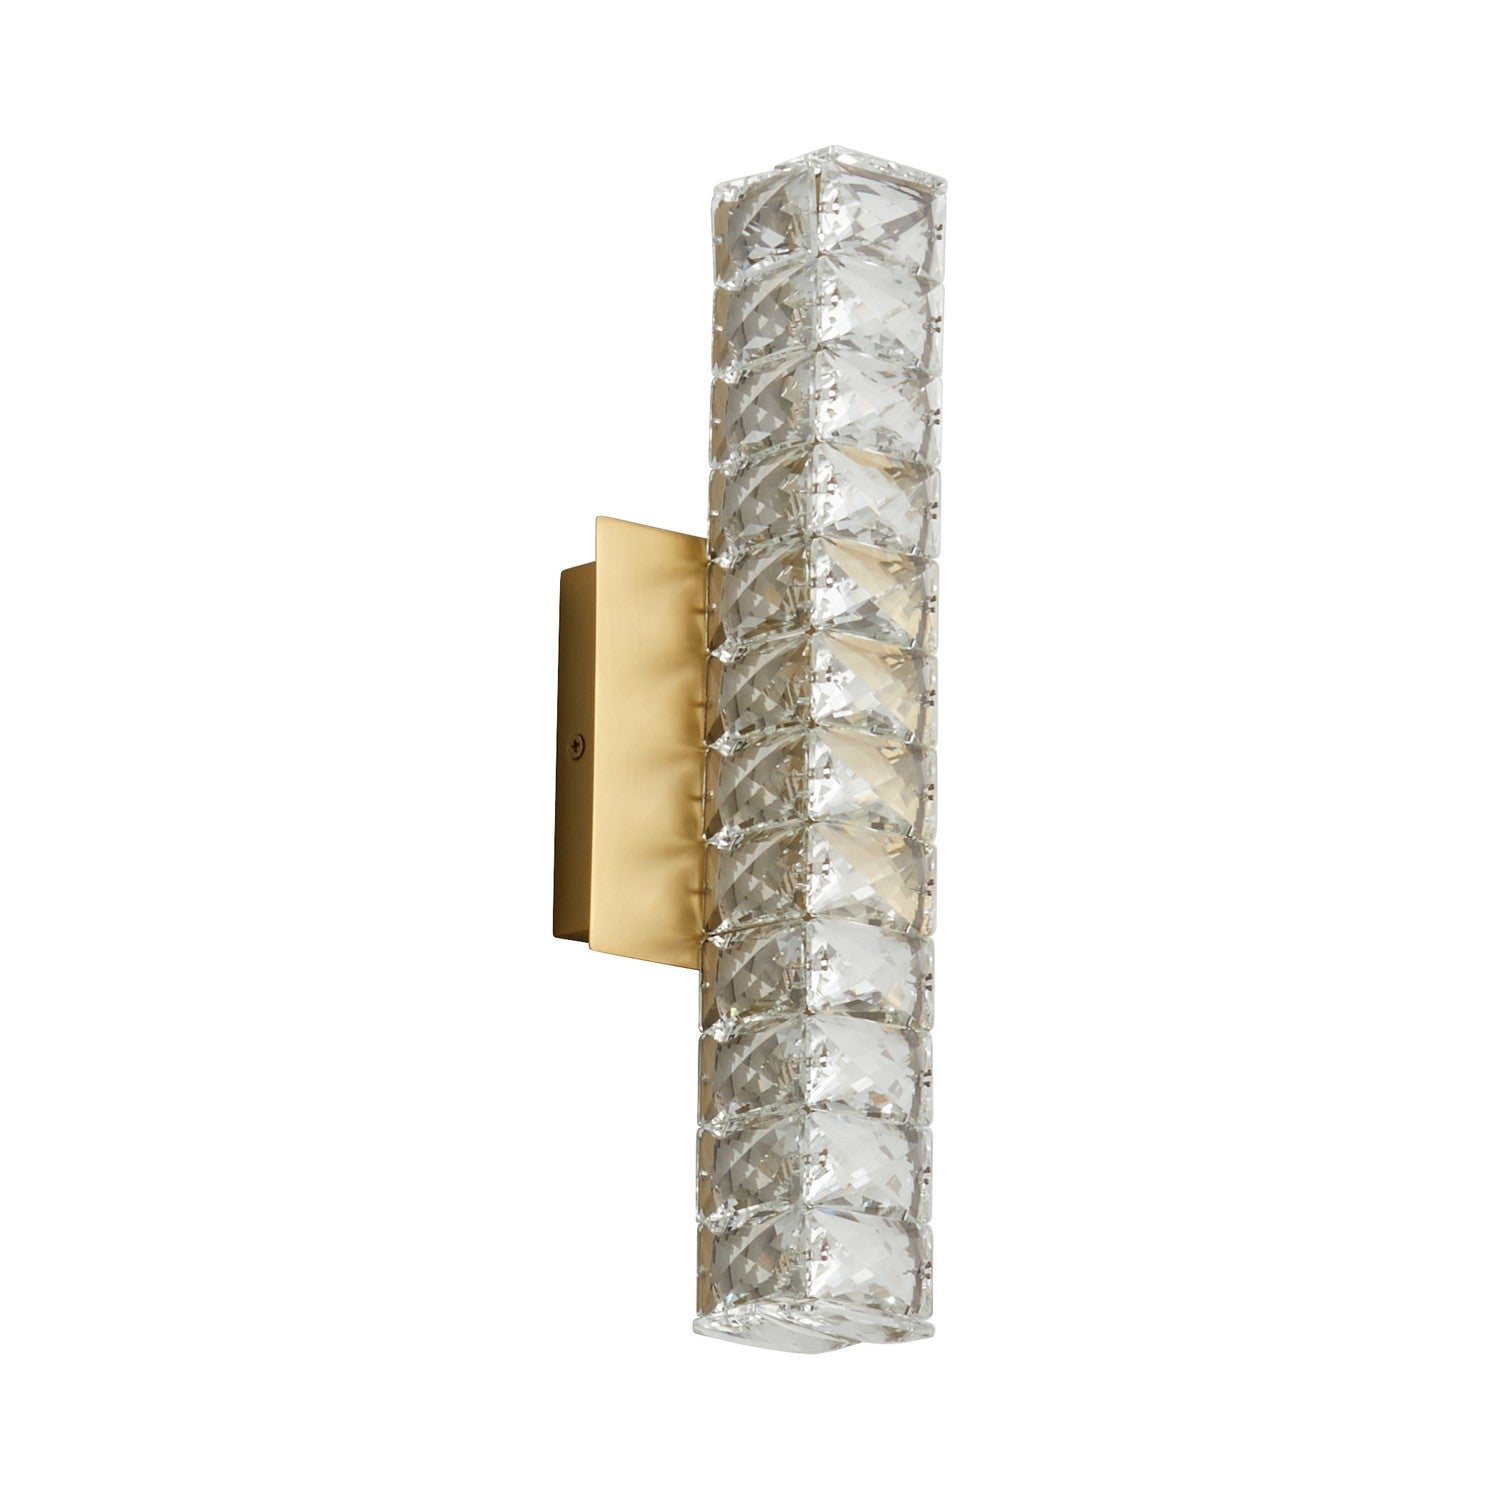 Oxygen Elan 3-572-40 Modern Sconce LED Wall Light Fixture- Aged Brass